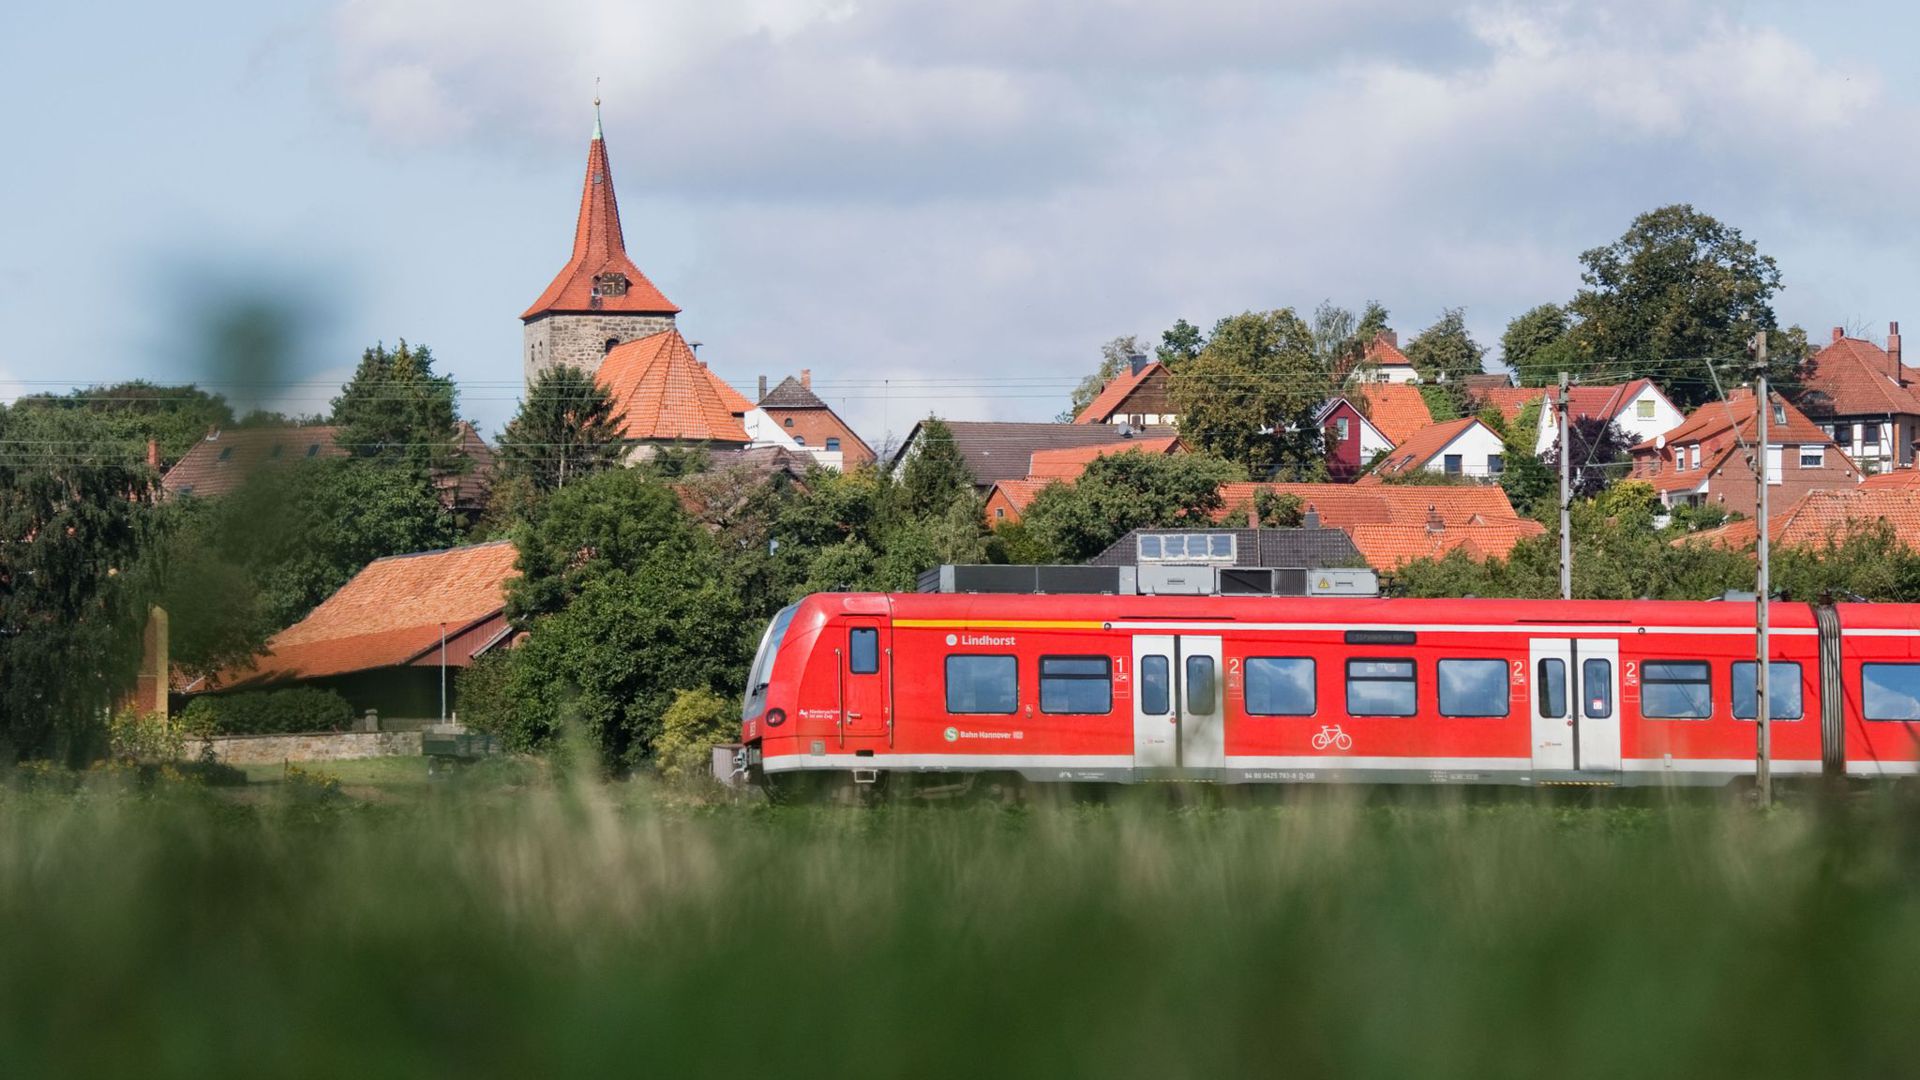 Für 9 Euro je Monat kann man im Juni, Juli und August unbegrenzt Bahnfahren im Nah- und Regionalverkehr – sofern die politischen Beschlüsse rechtzeitig fallen.